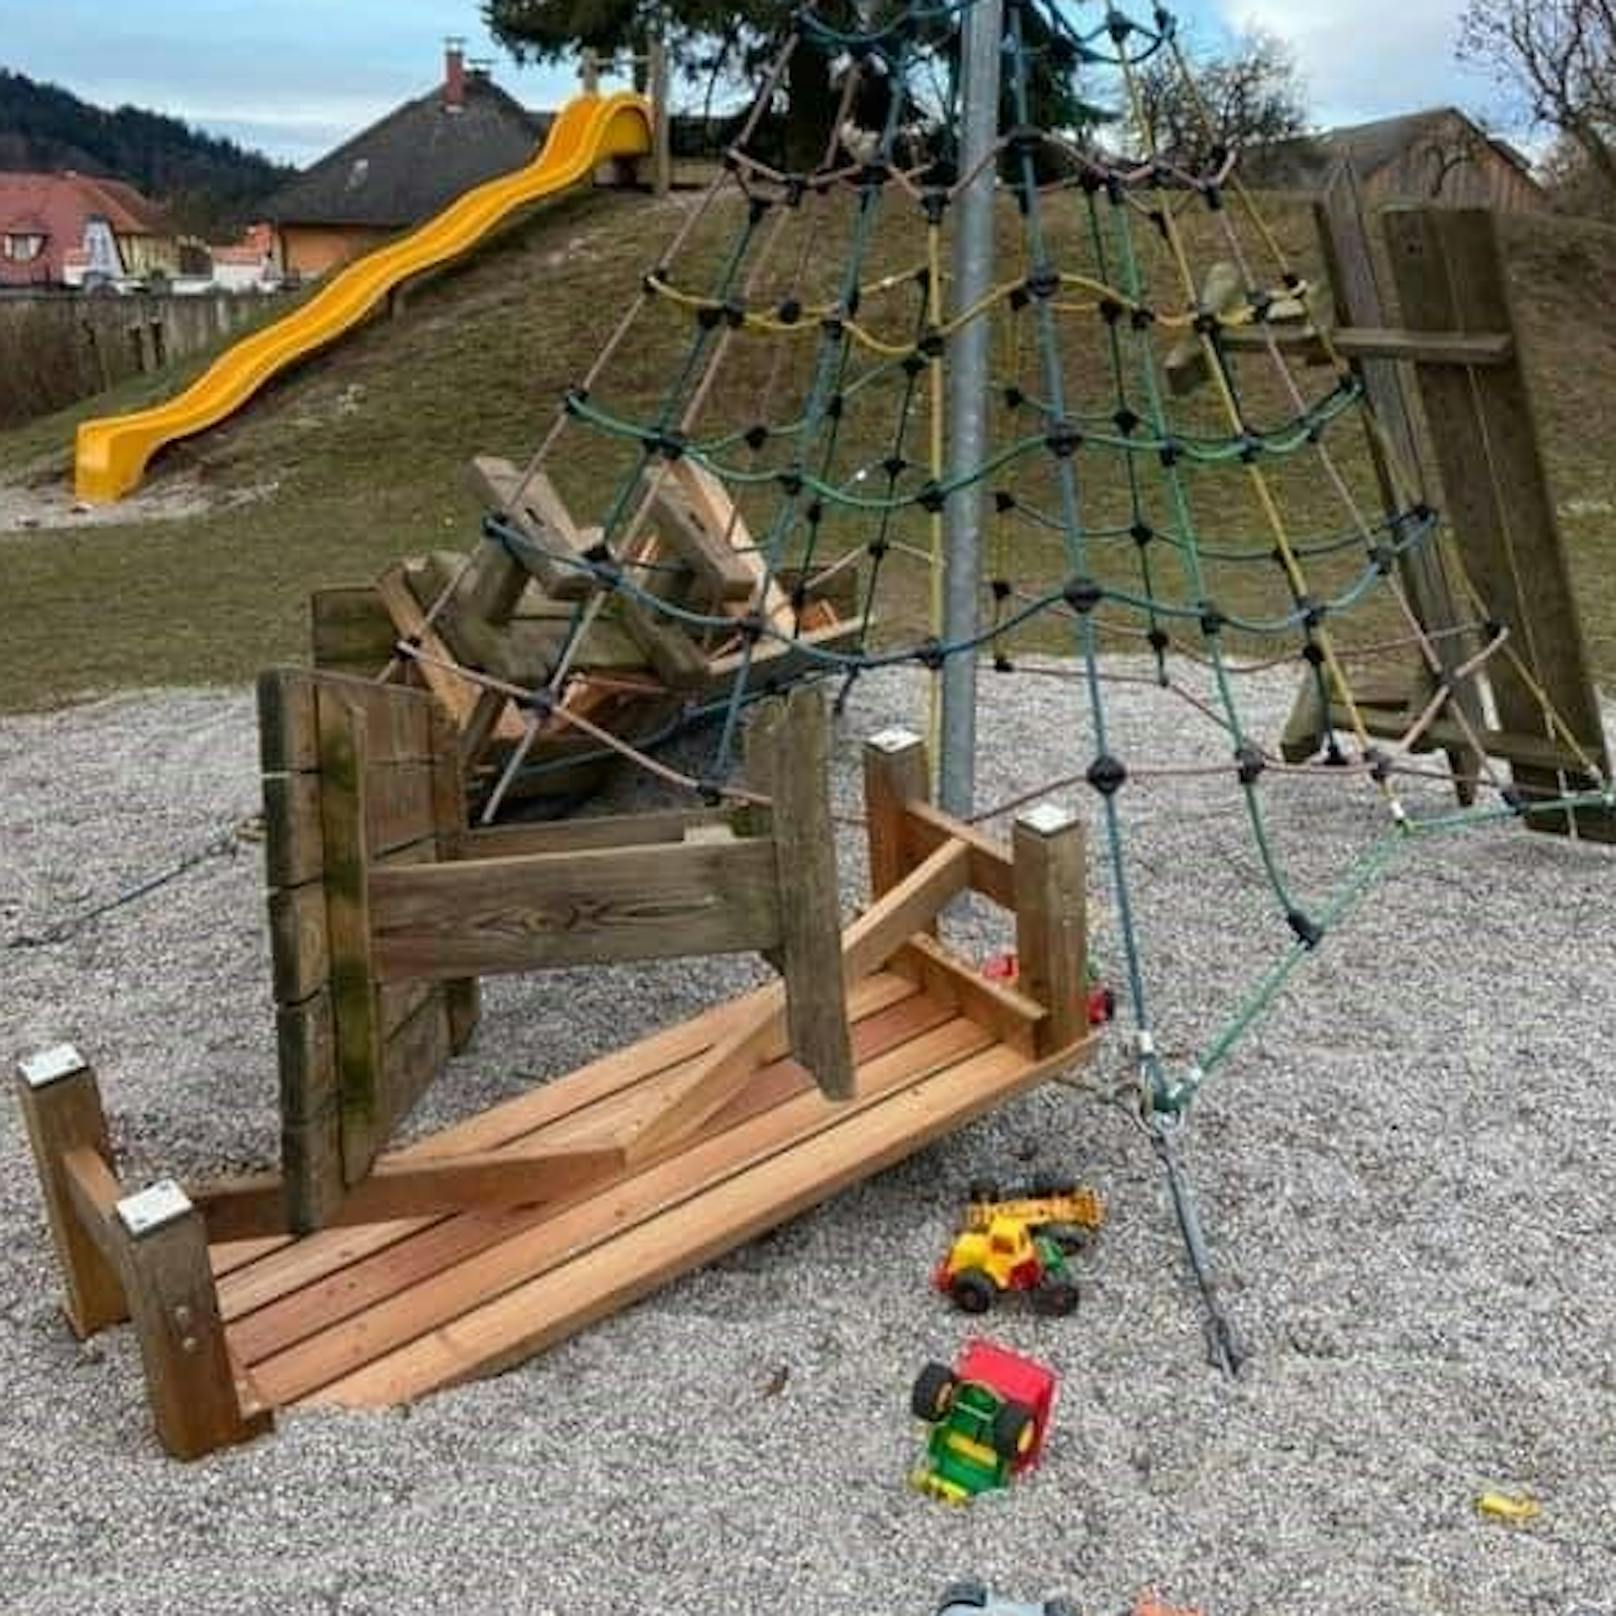 Unbekannte Täter zerstörten zahlreiche Geräte am Kinderspielplatz.